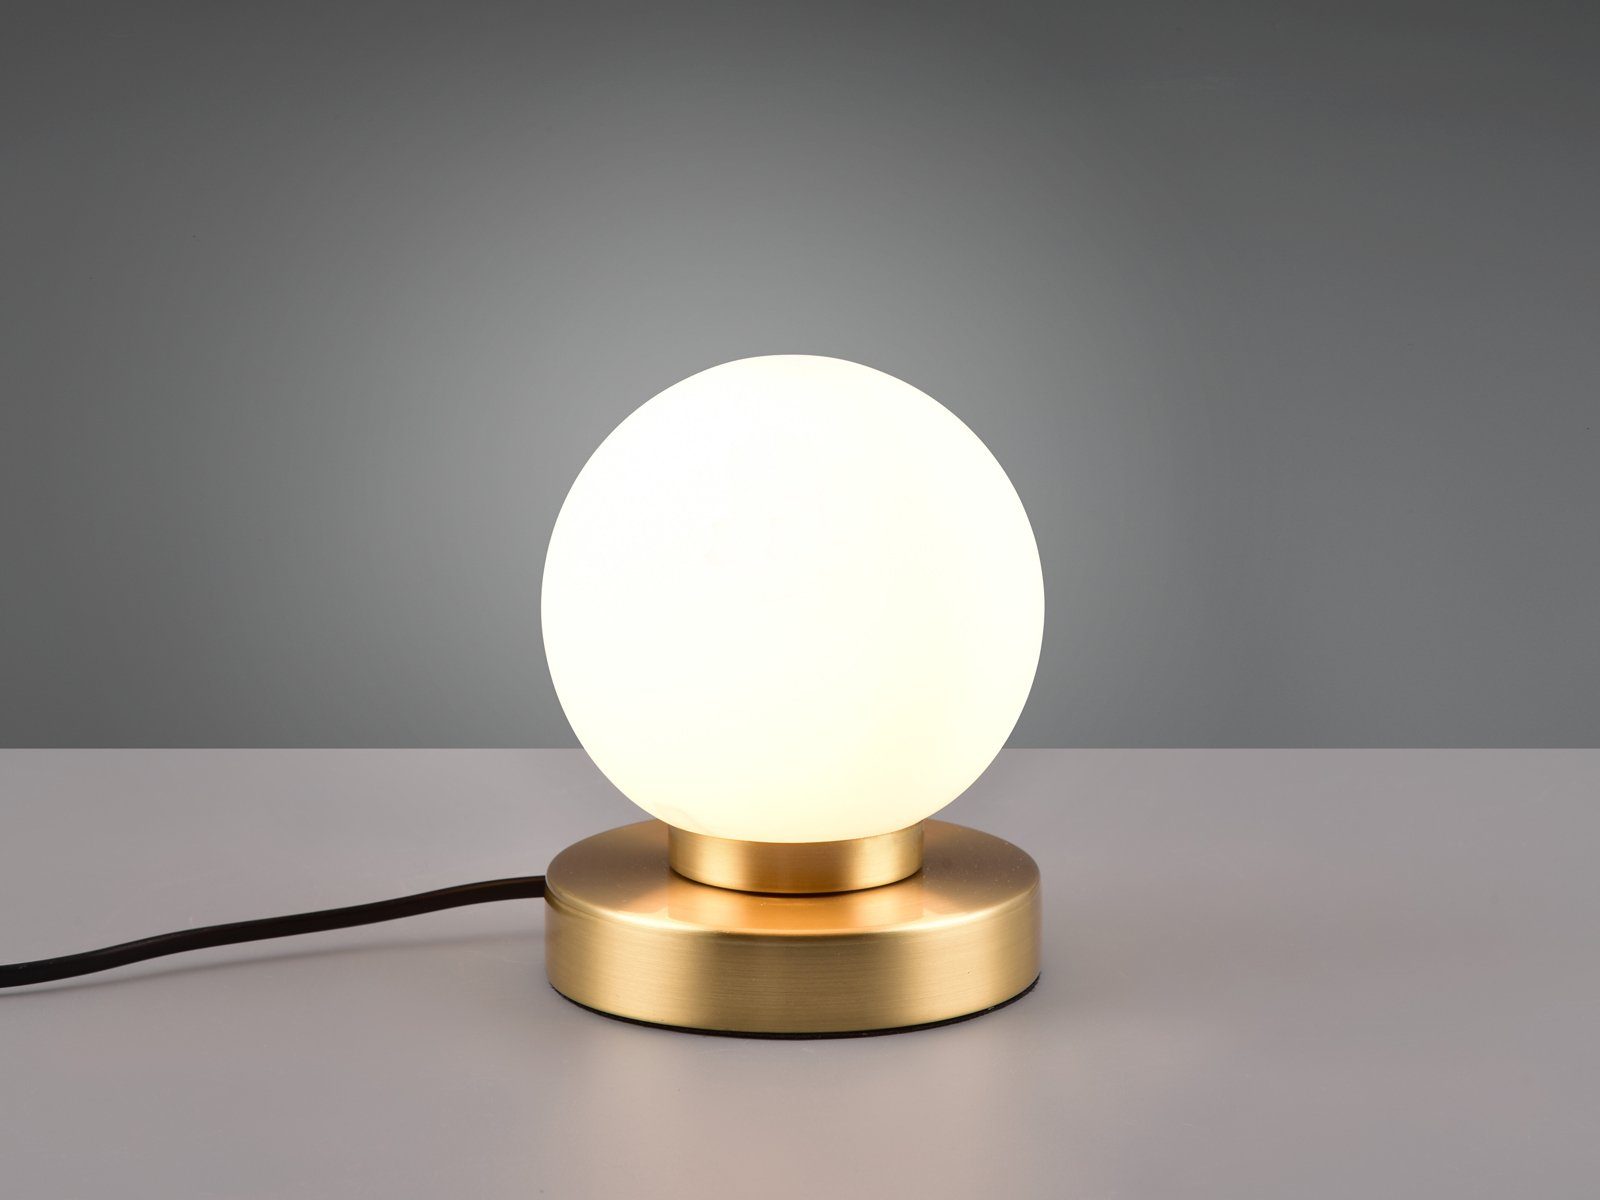 LED Lampenschirm Weiß Bauhaus 12cm Ø Warmweiß, meineWunschleuchte kleine Dimmfunktion, touch dimmbar wechselbar, LED Glas-kugel Lampe Messing-Weiß Nachttischlampe,